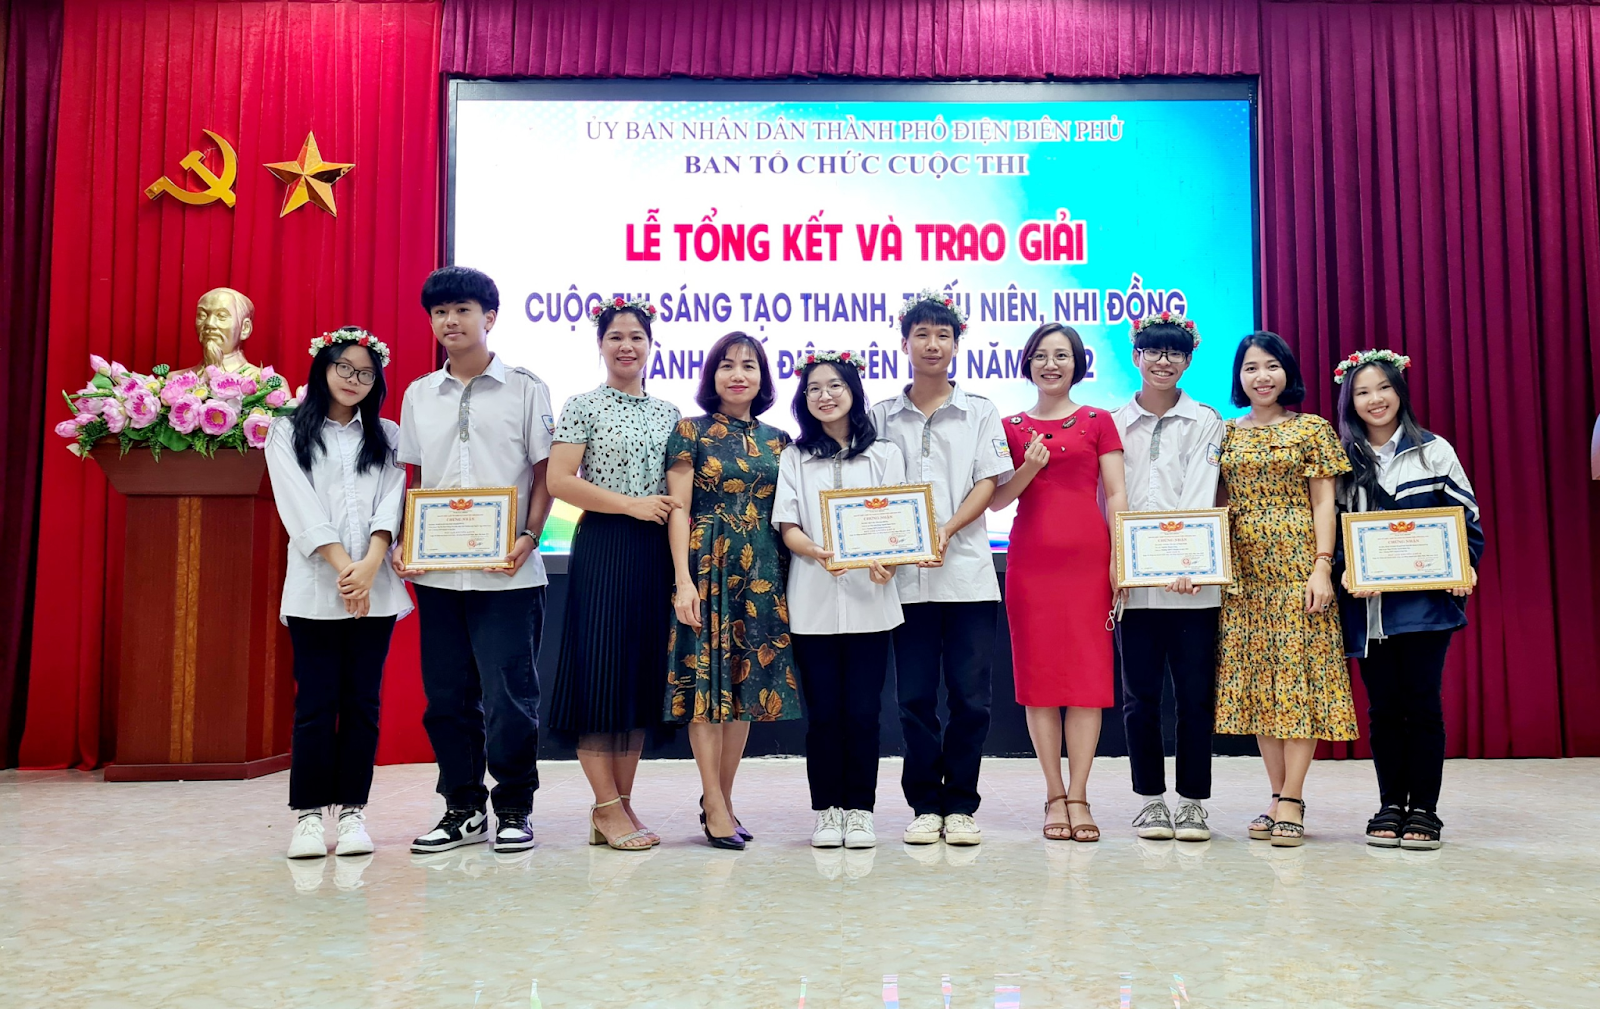 Trường THPT Chuyên Lê Quý Đôn tích cực tham gia và đạt thành tích cao trong cuộc thi Sáng tạo thanh thiếu niên, nhi đồng năm 2022 cấp tỉnh và cấp thành phố